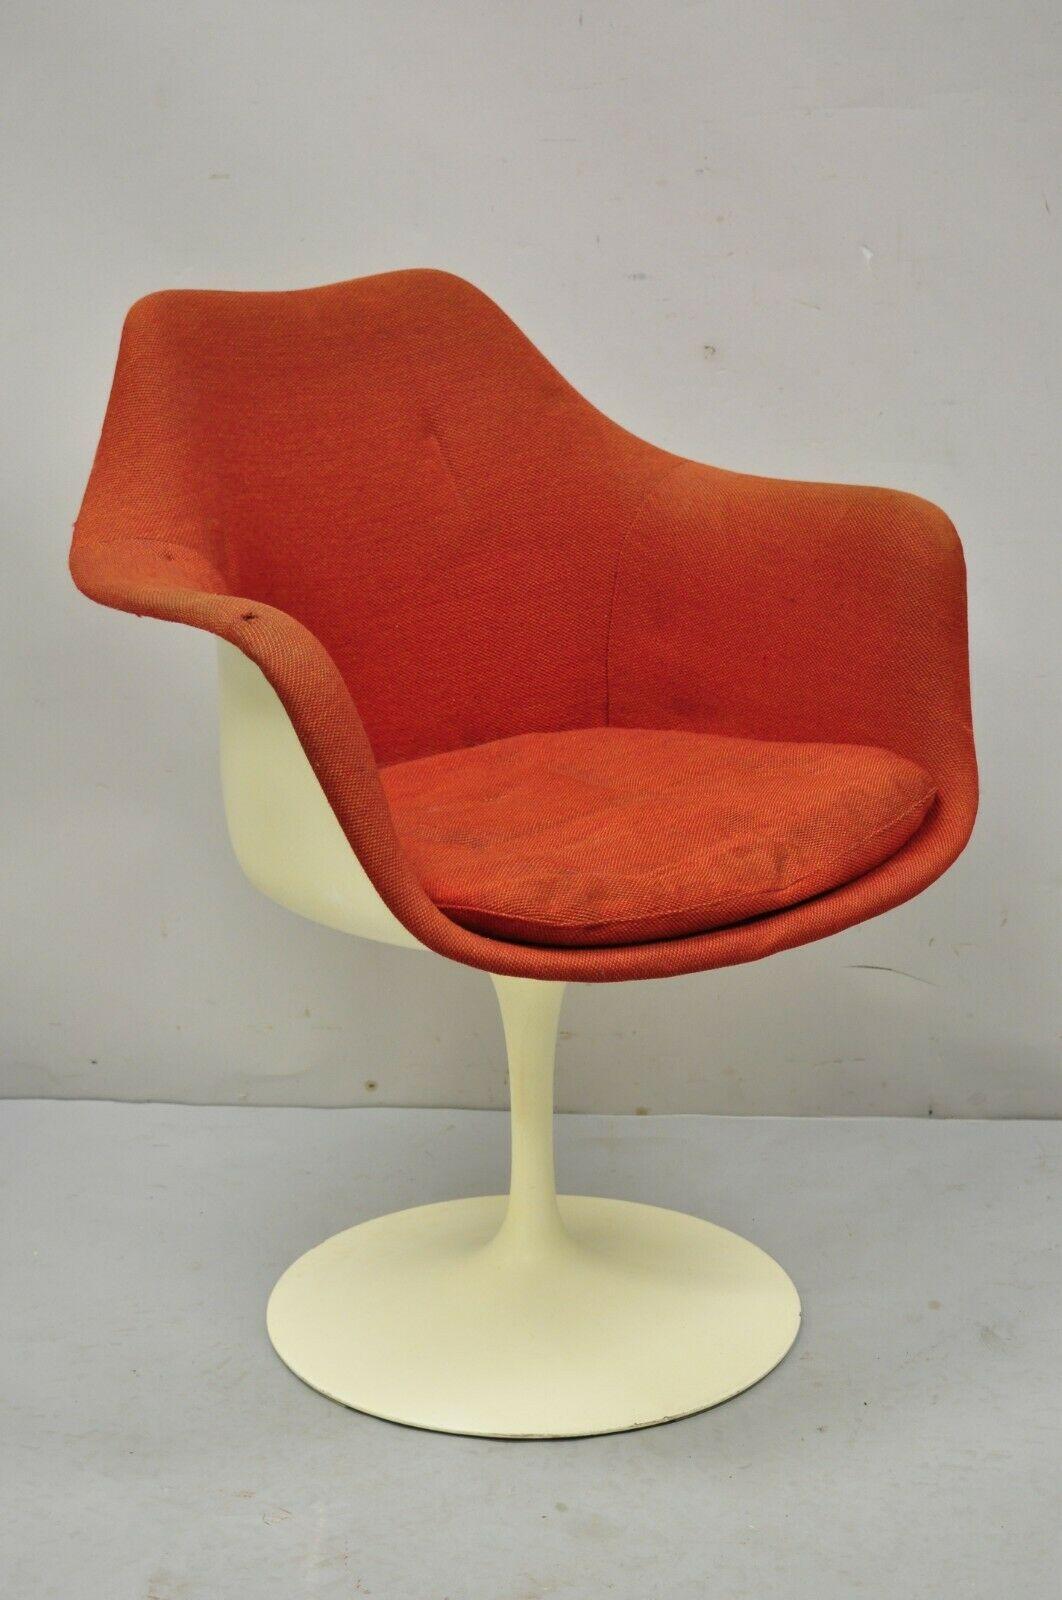 Vintage Knoll Eero Saarinen Red Upholstered Fiberglass Tulip Arm Chair. A se caractérise par une assise en fibre de verre, une sellerie rouge d'origine, des labels d'origine, des lignes modernistes épurées, une fabrication américaine de qualité, un